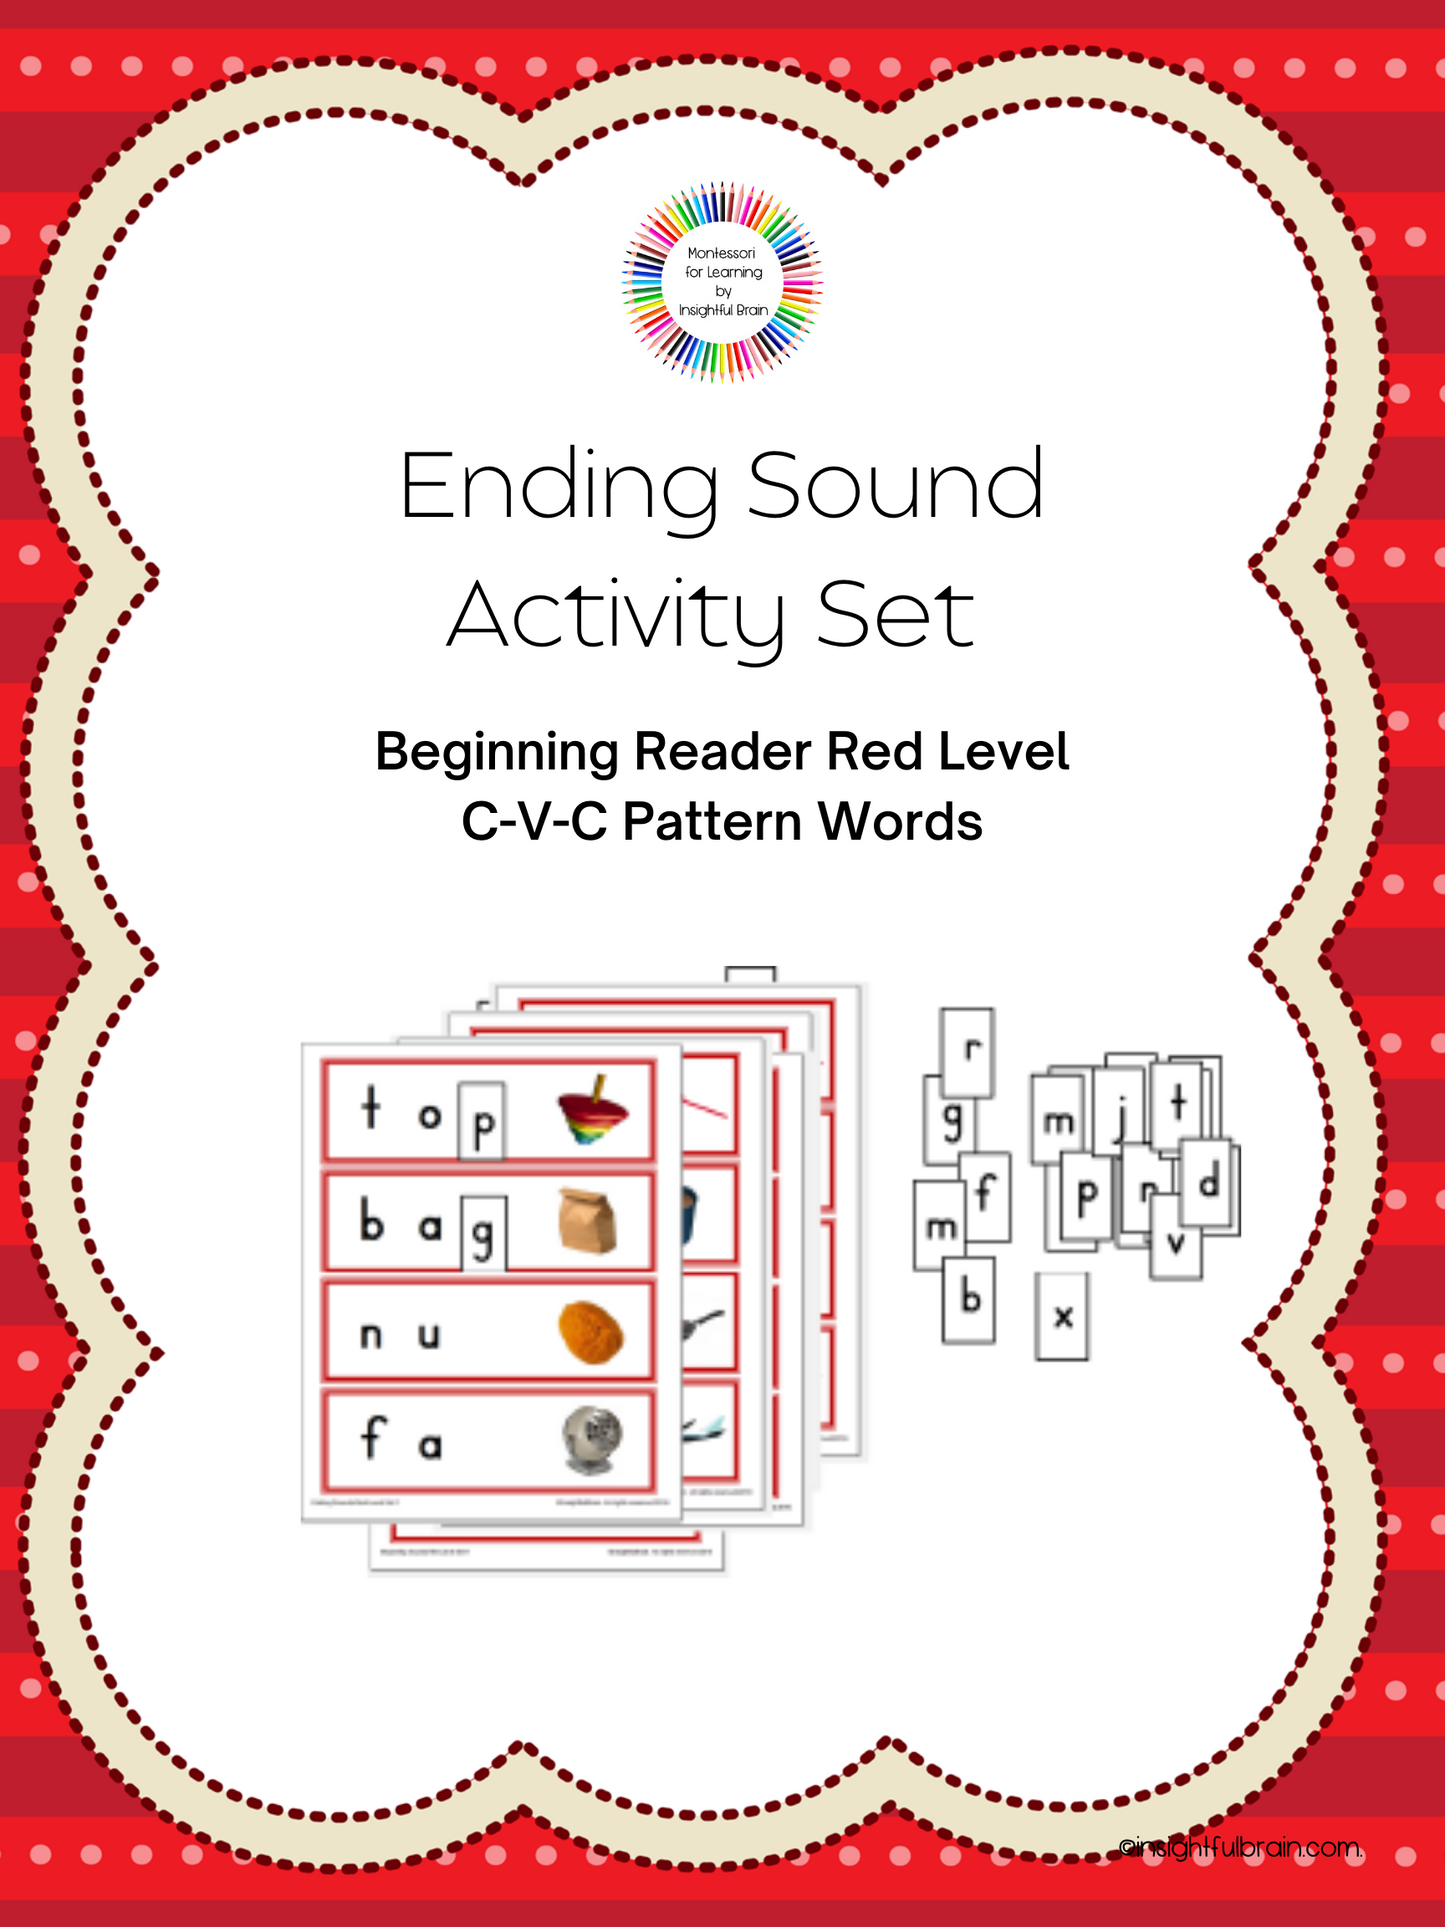 Red Level C-V-C Pattern Ending Sound Activity Card Set 1